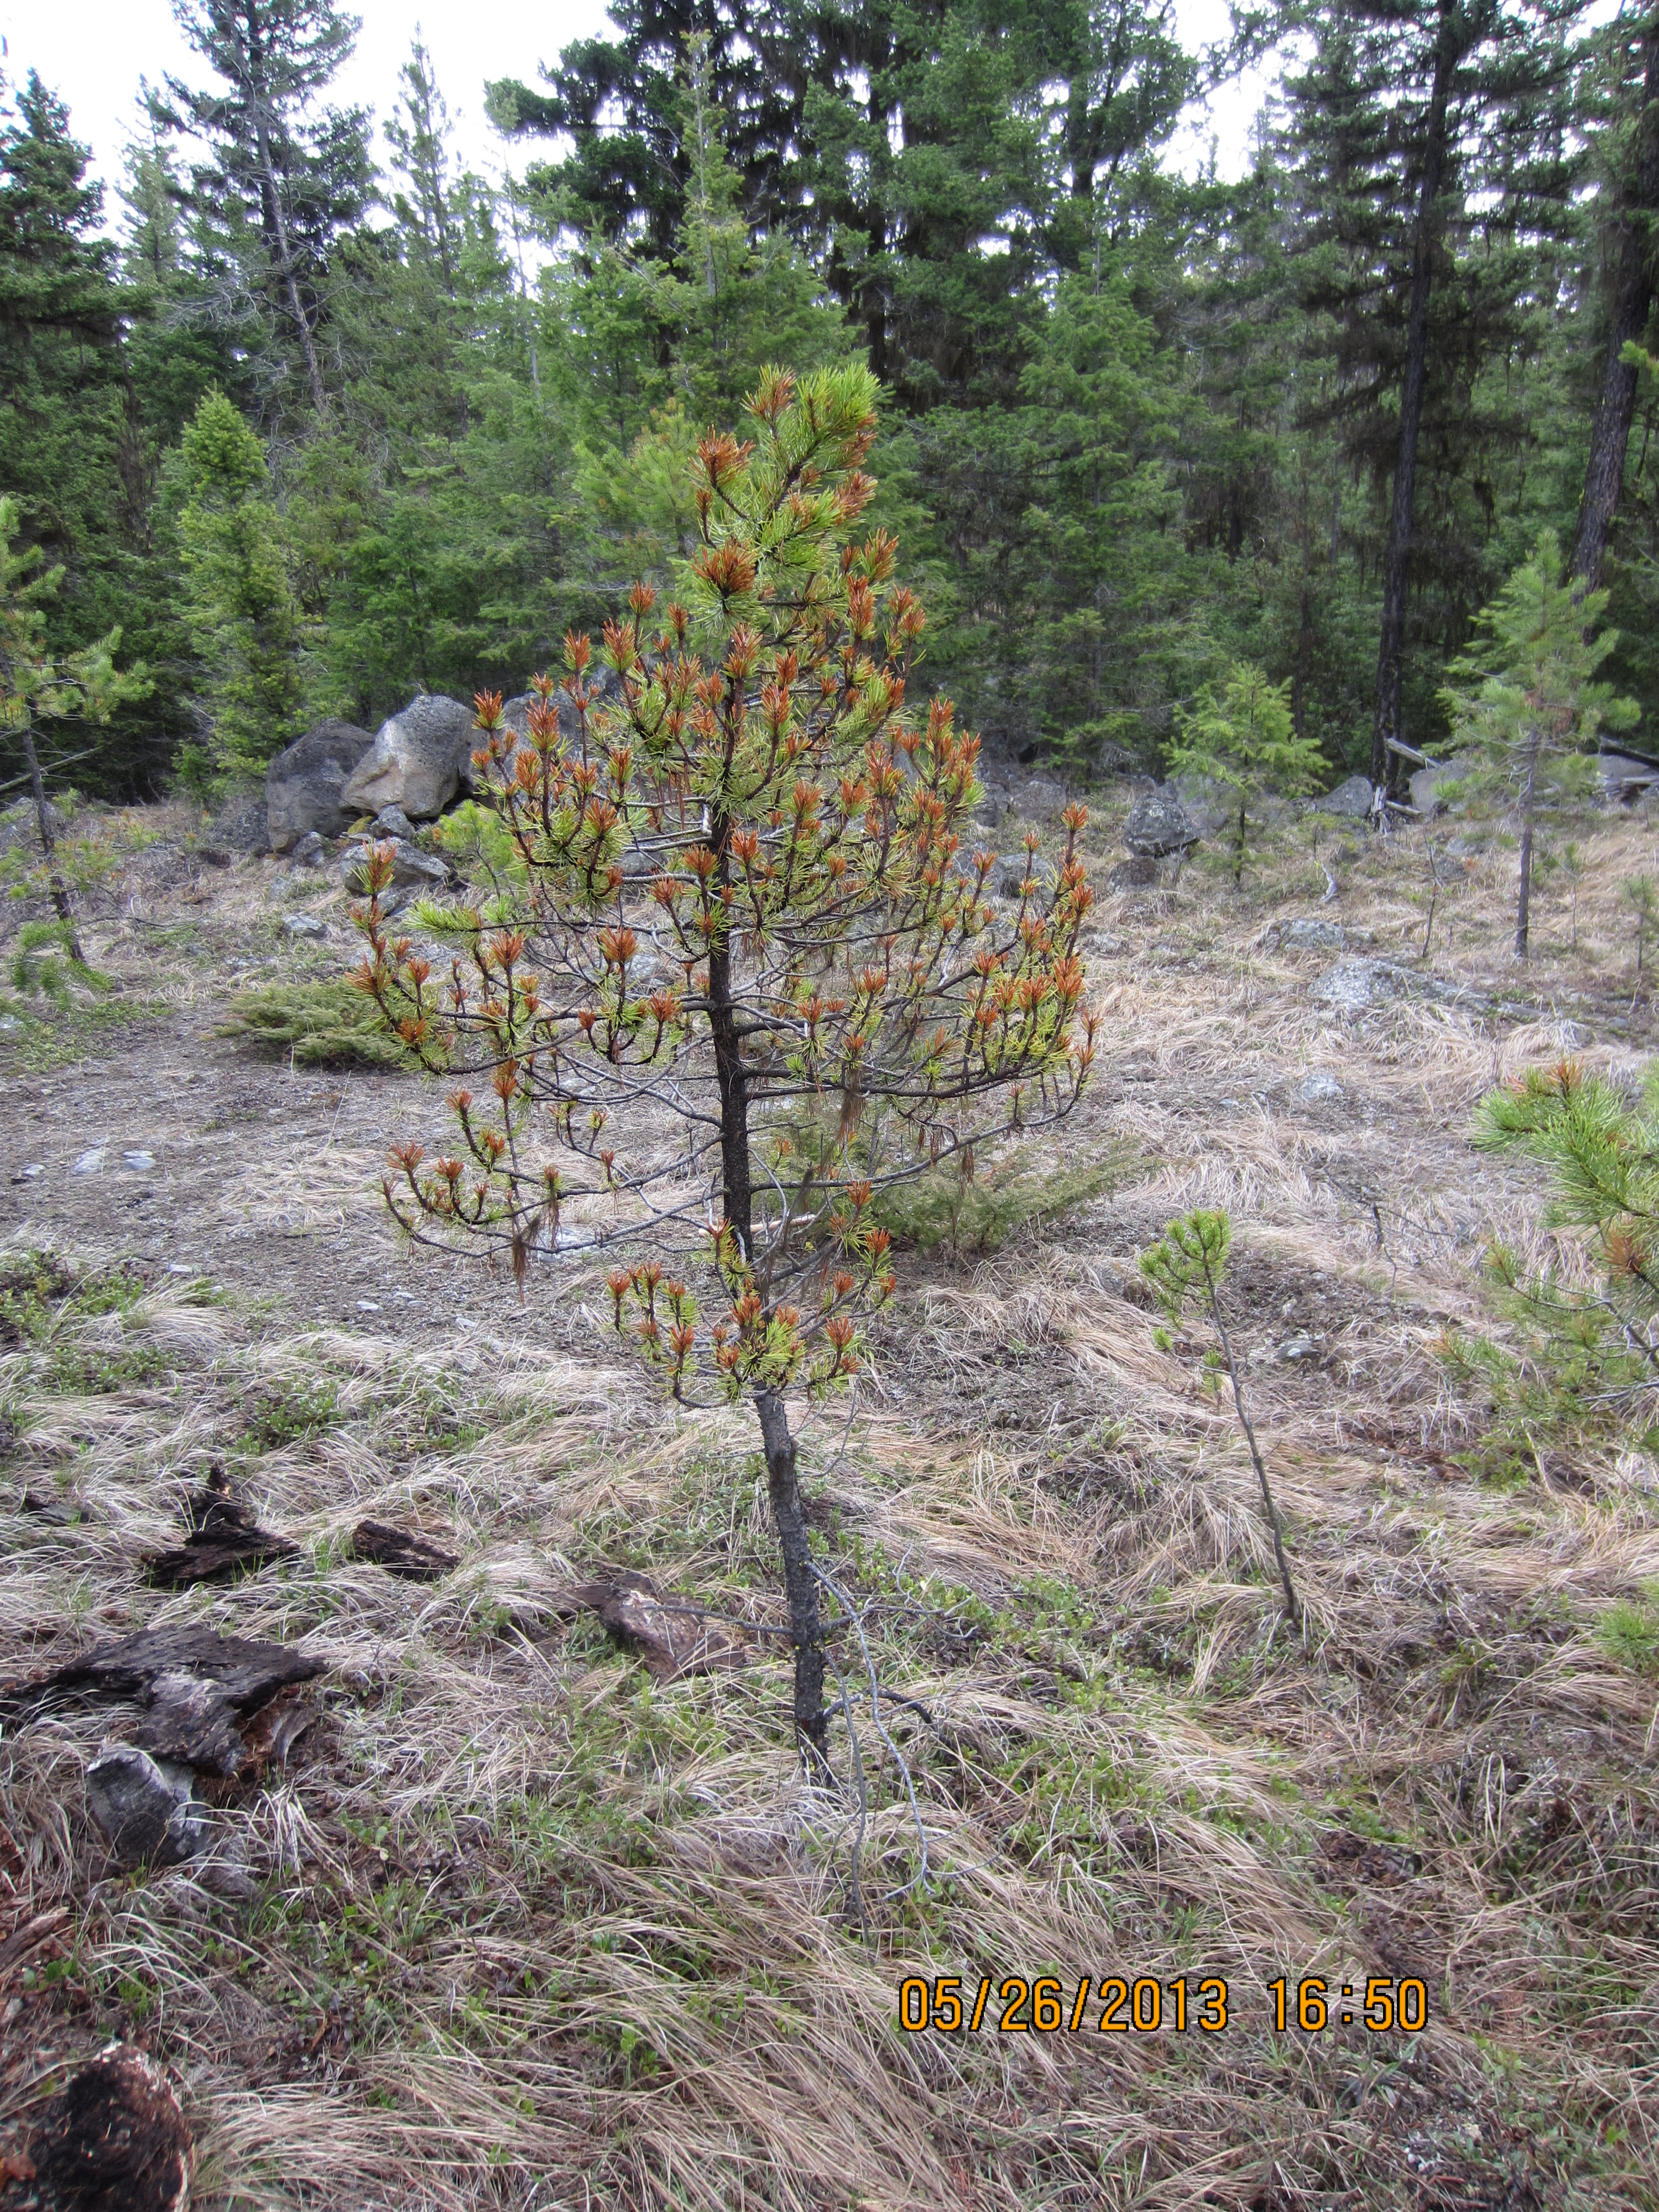 Severe stunting caused by Elytroderma deformans on Ponderosa pine.